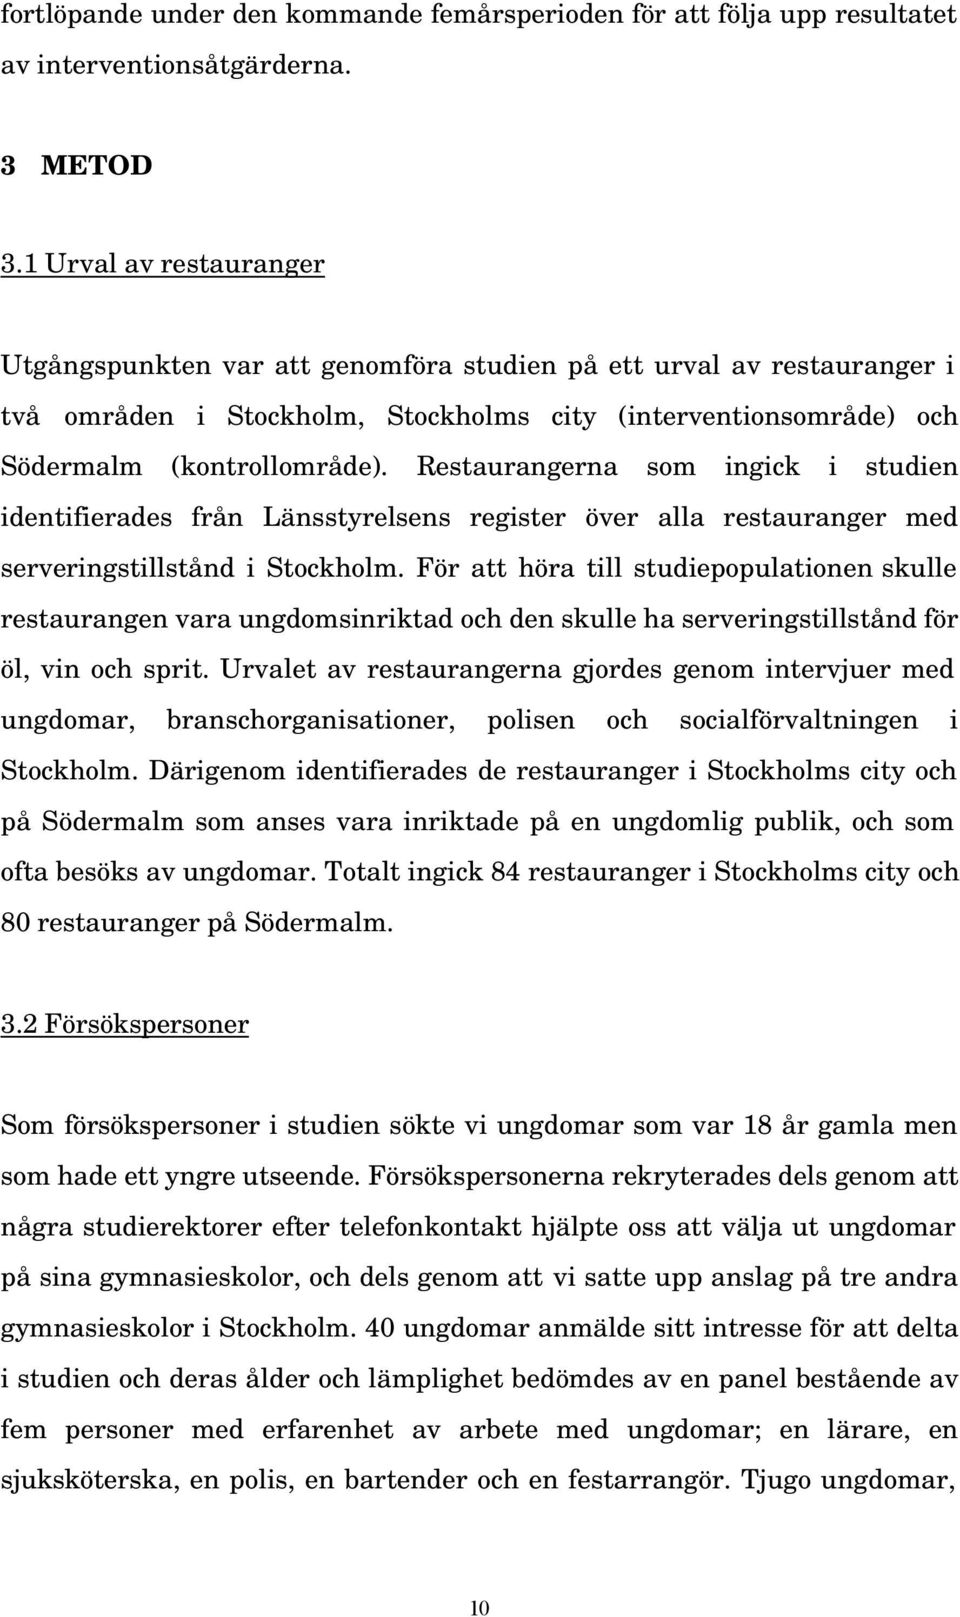 Restaurangerna som ingick i studien identifierades från Länsstyrelsens register över alla restauranger med serveringstillstånd i Stockholm.